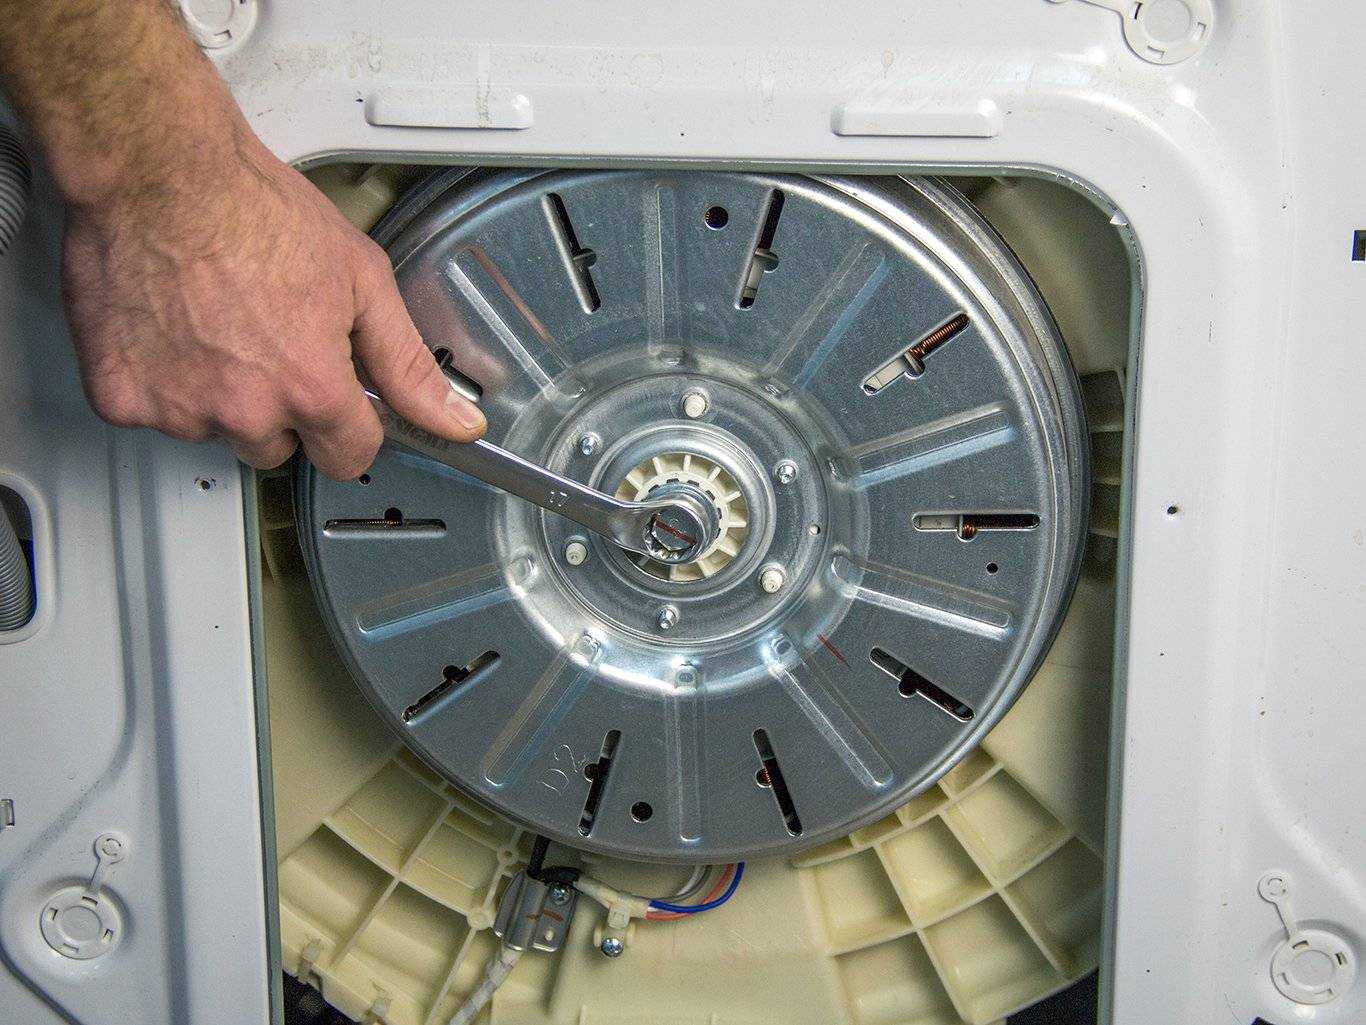 Почему не крутится барабан стиральной машины - причины. жми!
почему не крутится барабан стиральной машины - причины. жми!